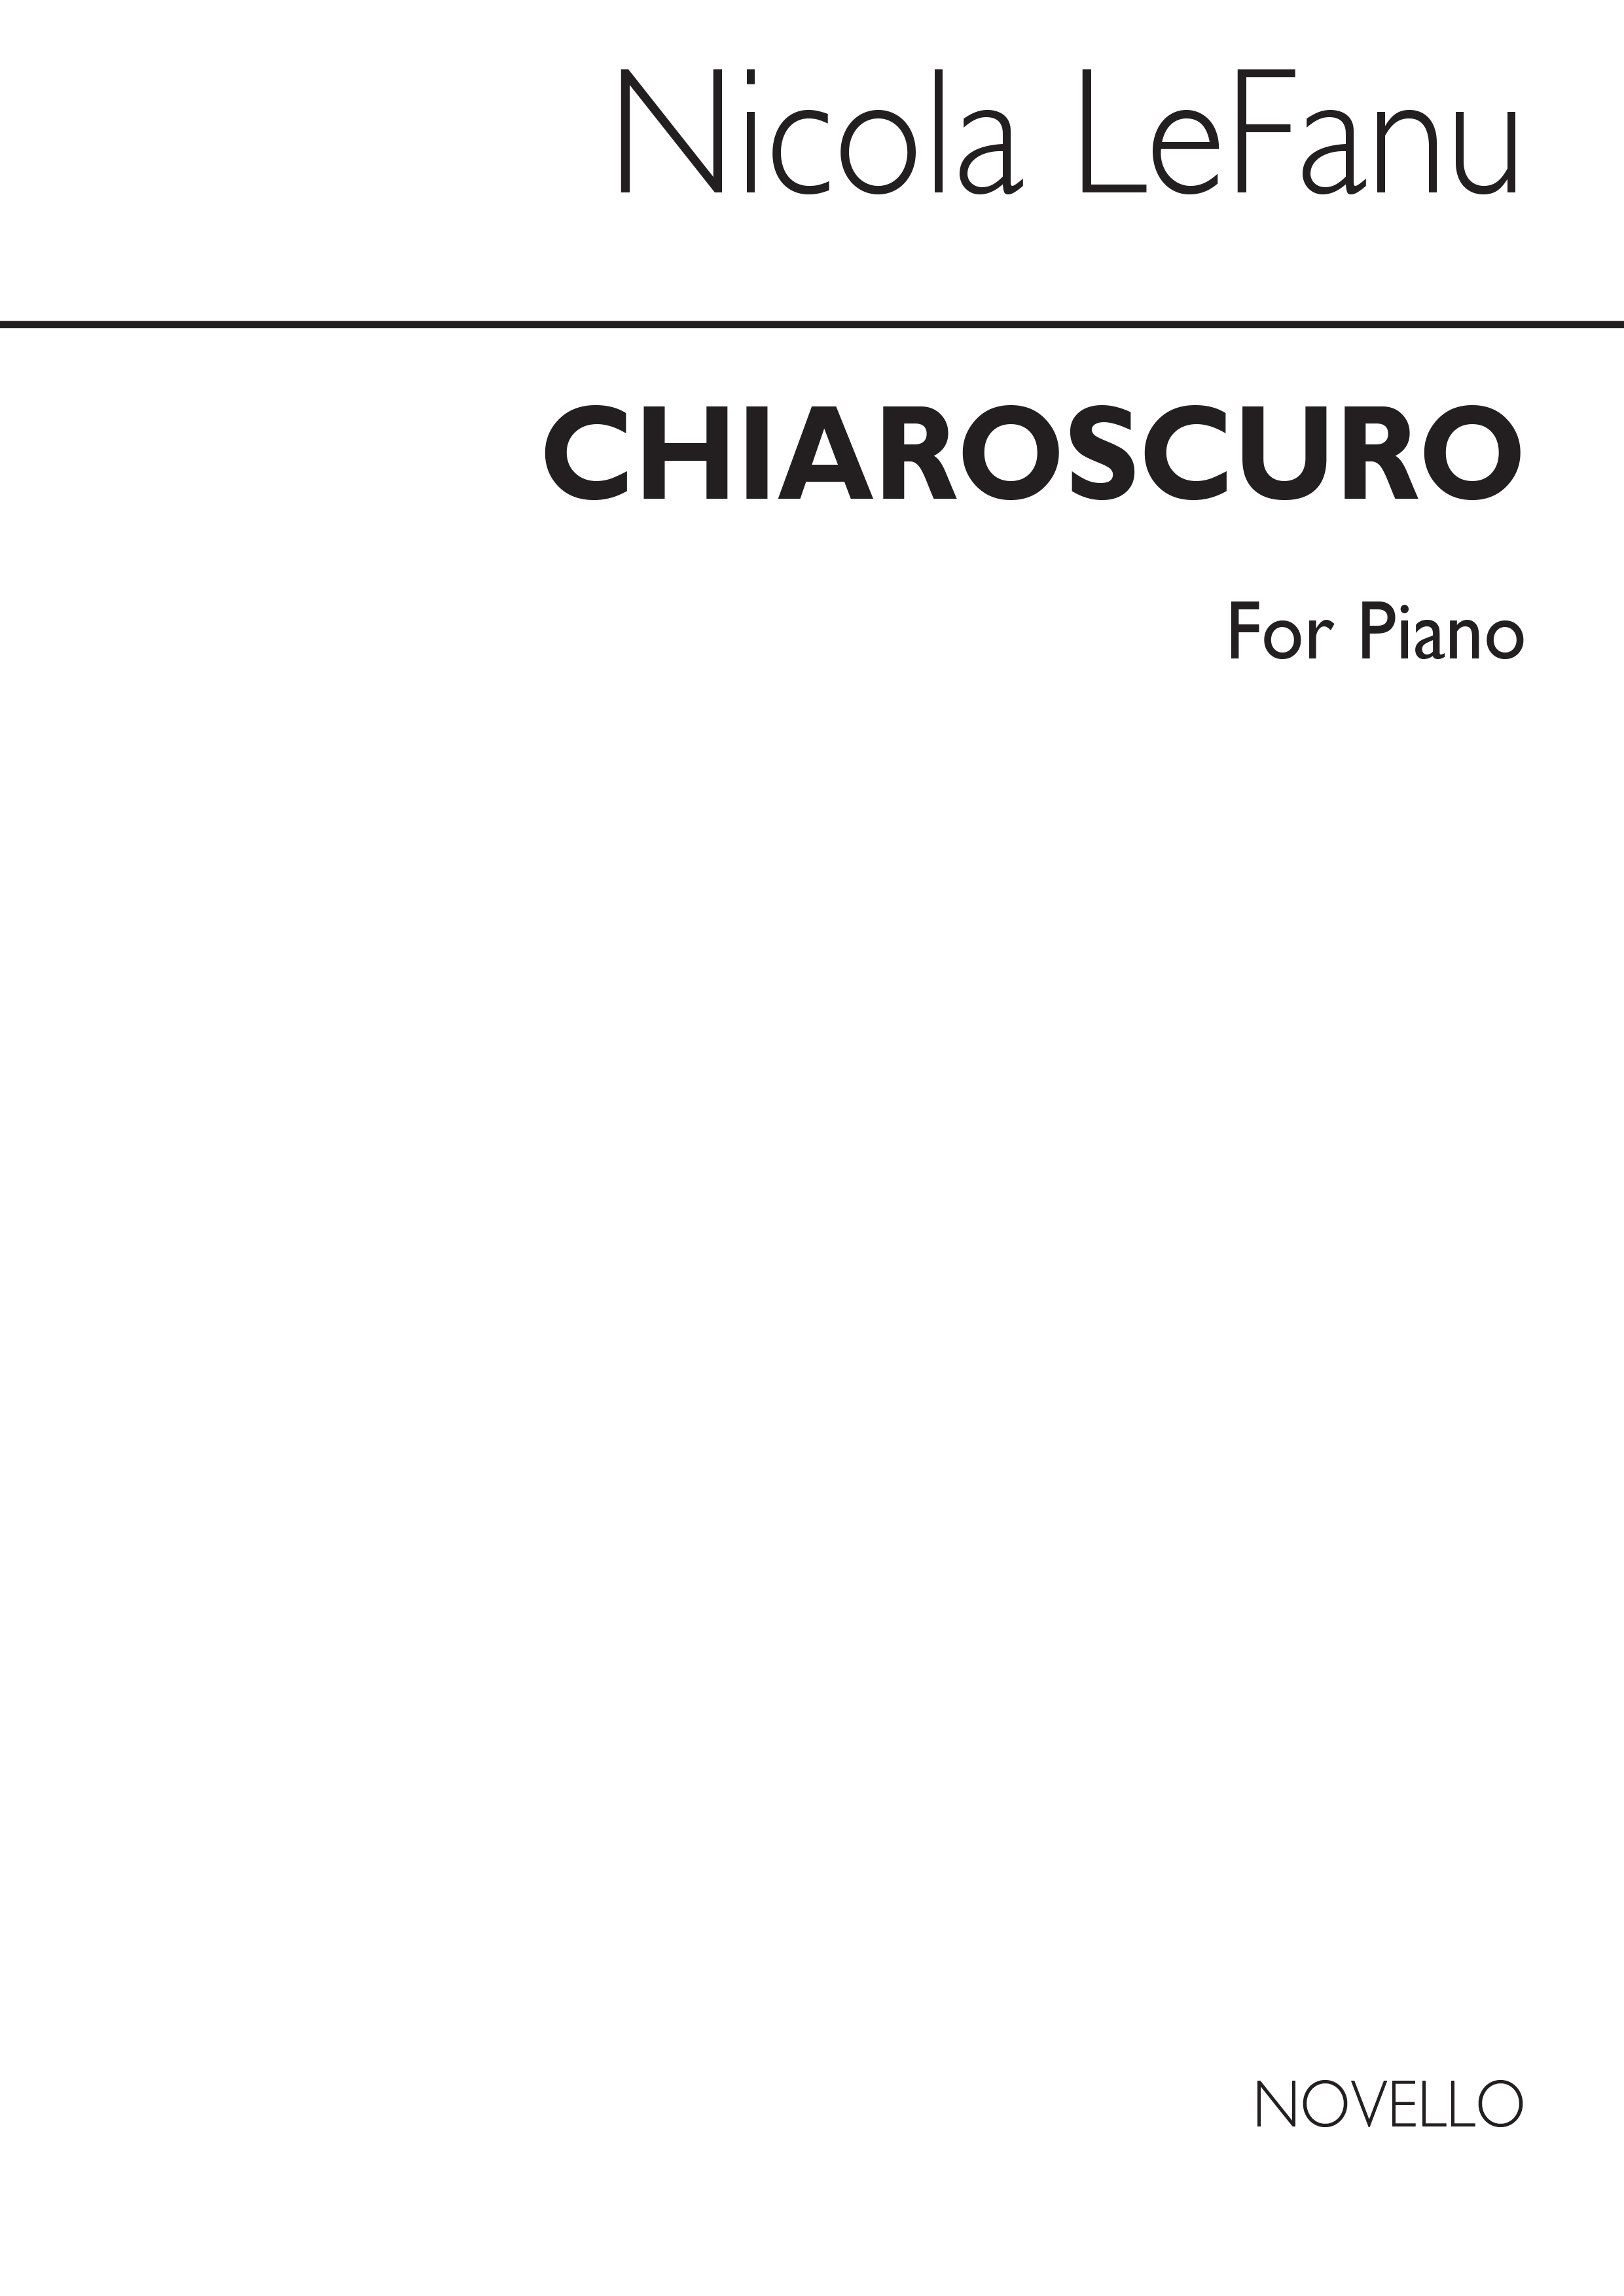 Lefanu: Chiaroscuro for Piano